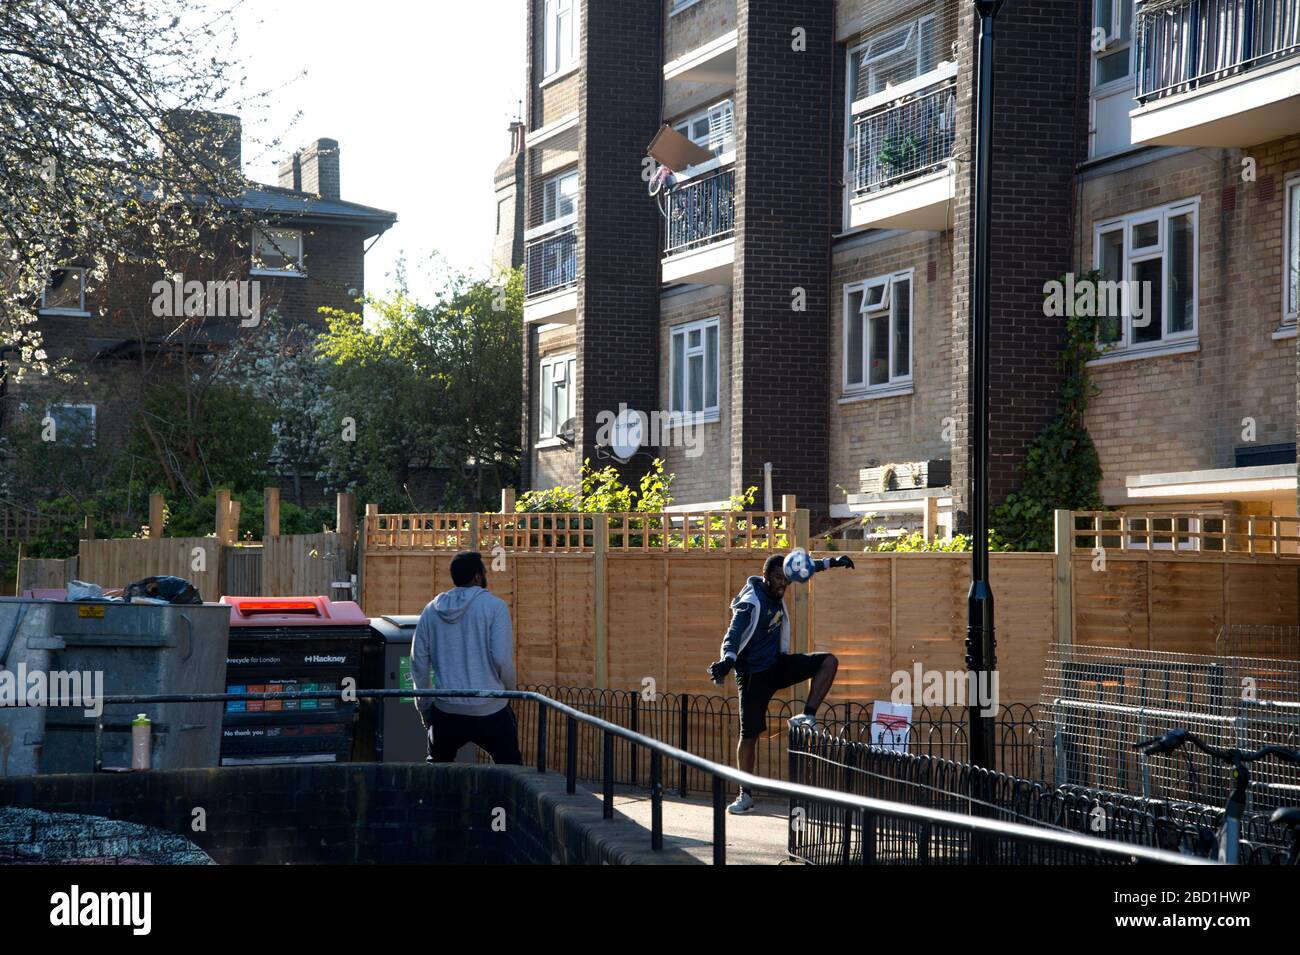 Londres, Hackney. Pandemia de coronavirus. Dos jóvenes juegan al fútbol junto a los bins. Foto de stock